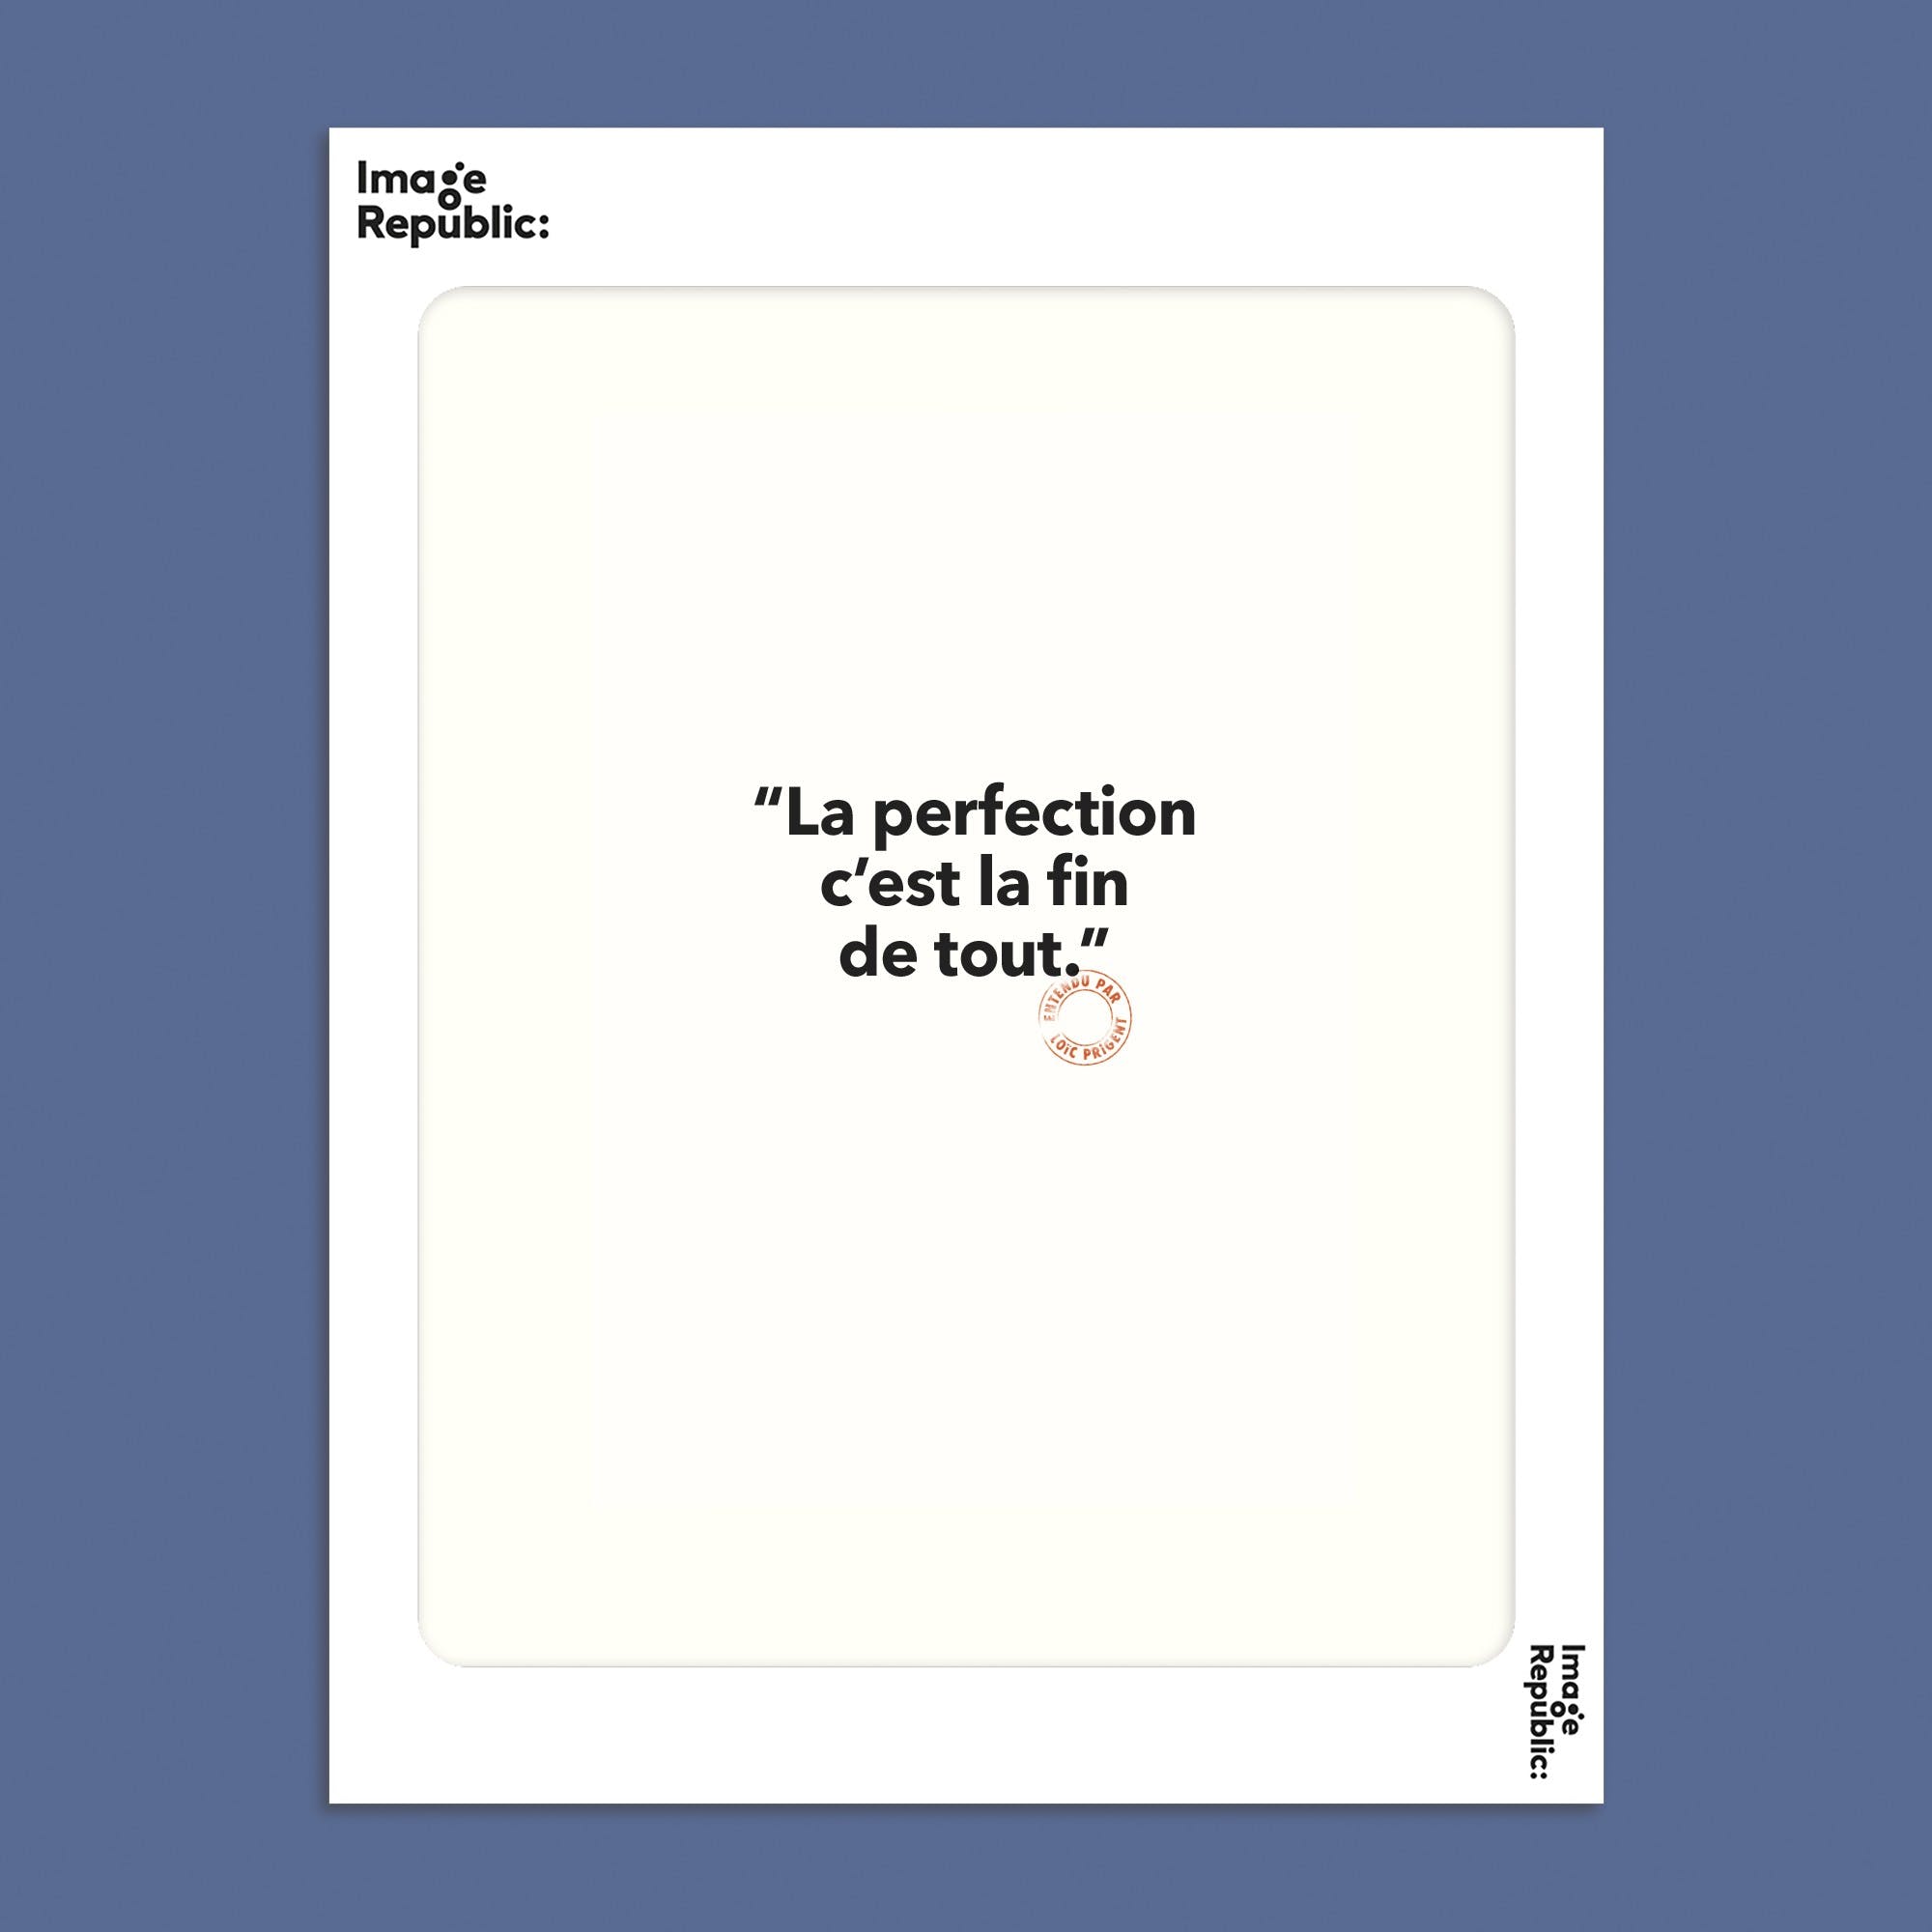 La perfection... - Affiche 30x40 cm Affiches, reproductions et œuvres graphiques Image Republic 